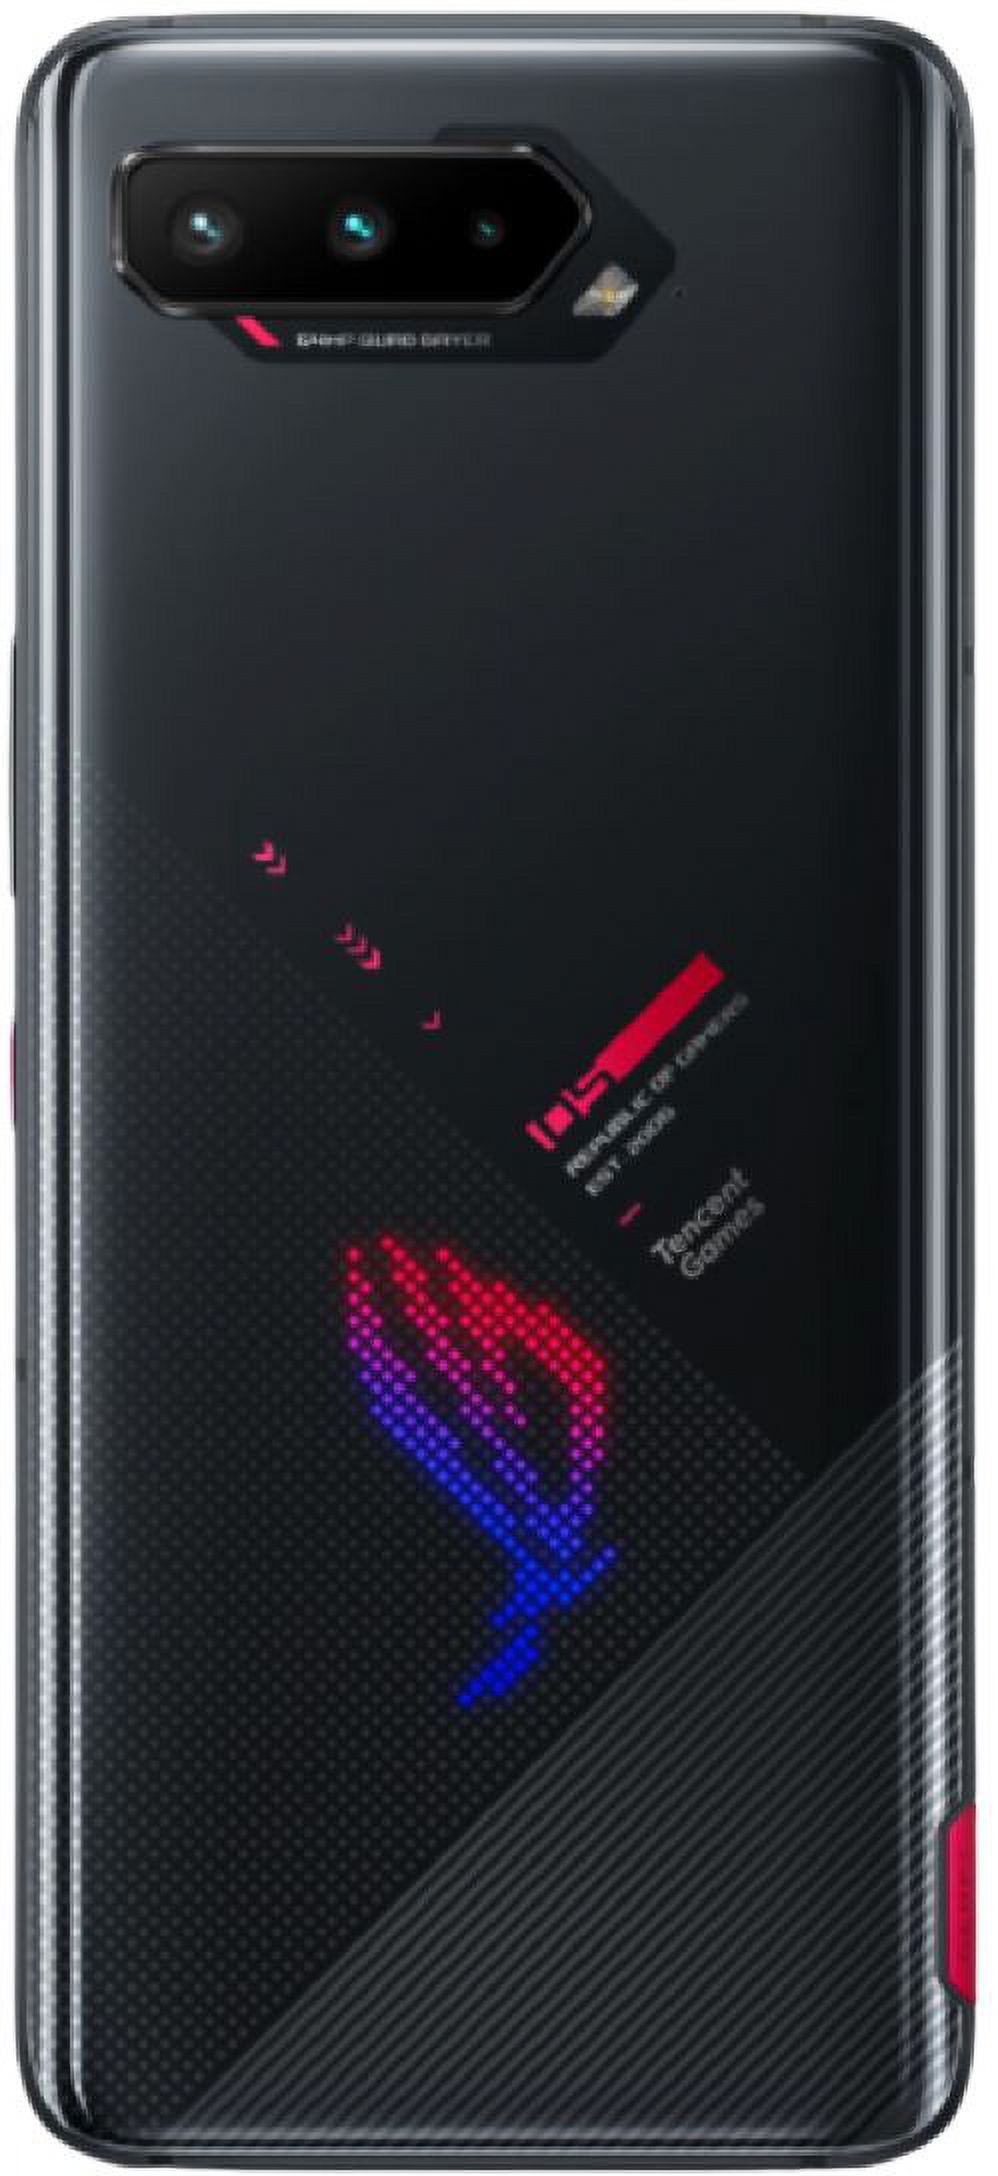 Asus ROG Phone 5 ZS673KS / I005DA 5G 128GB 12GB RAM GSM Unlocked - Black - image 4 of 4